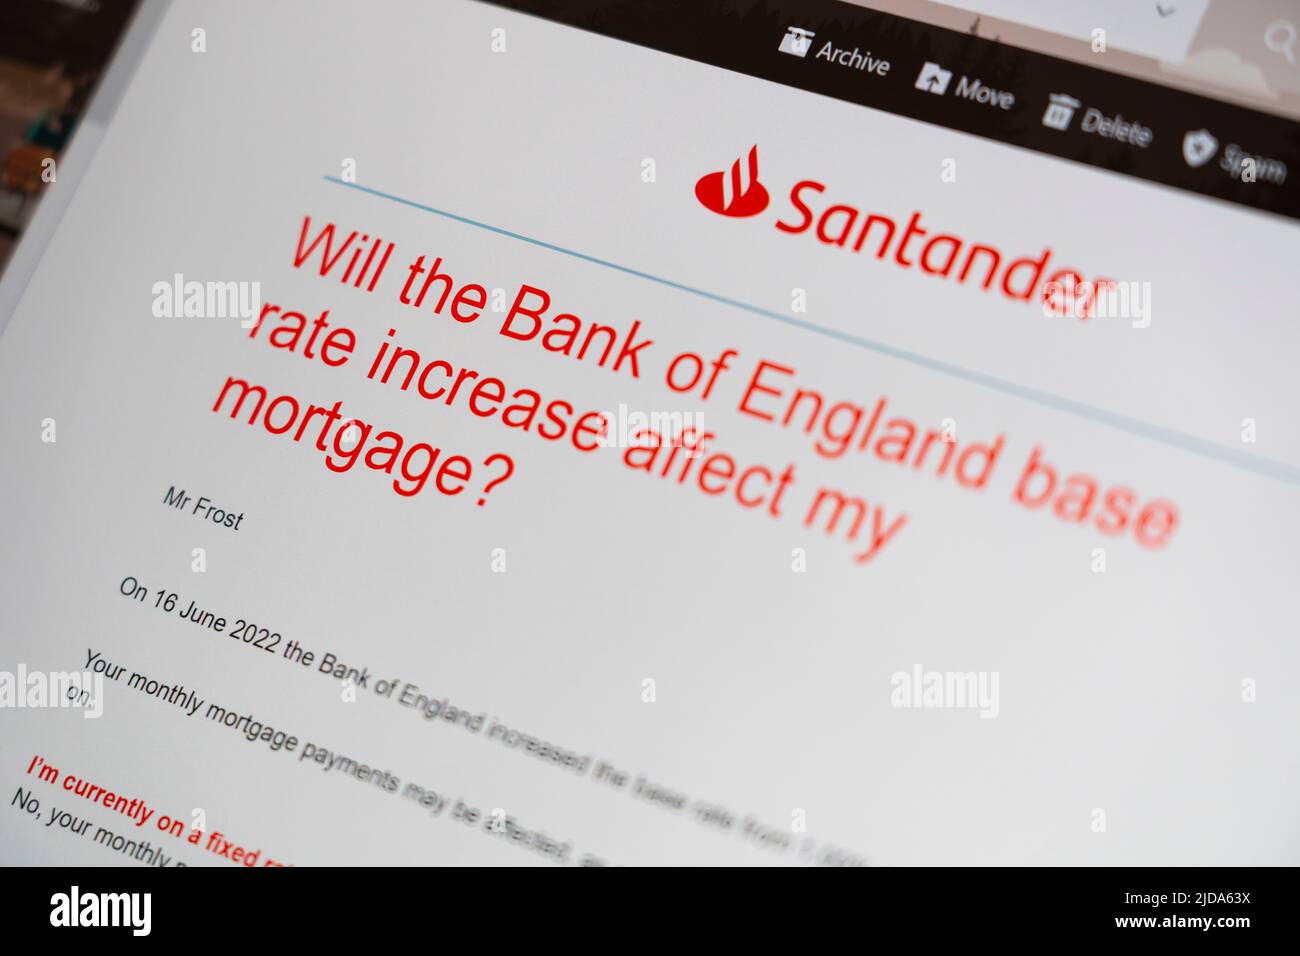 E-Mail von Santander, einem britischen Hypothekenanbieter, in der die Bank of England am 16.. Juni 2022 warnte, den Basiszinssatz von 1 % auf 1,25 % zu erhöhen Stockfoto